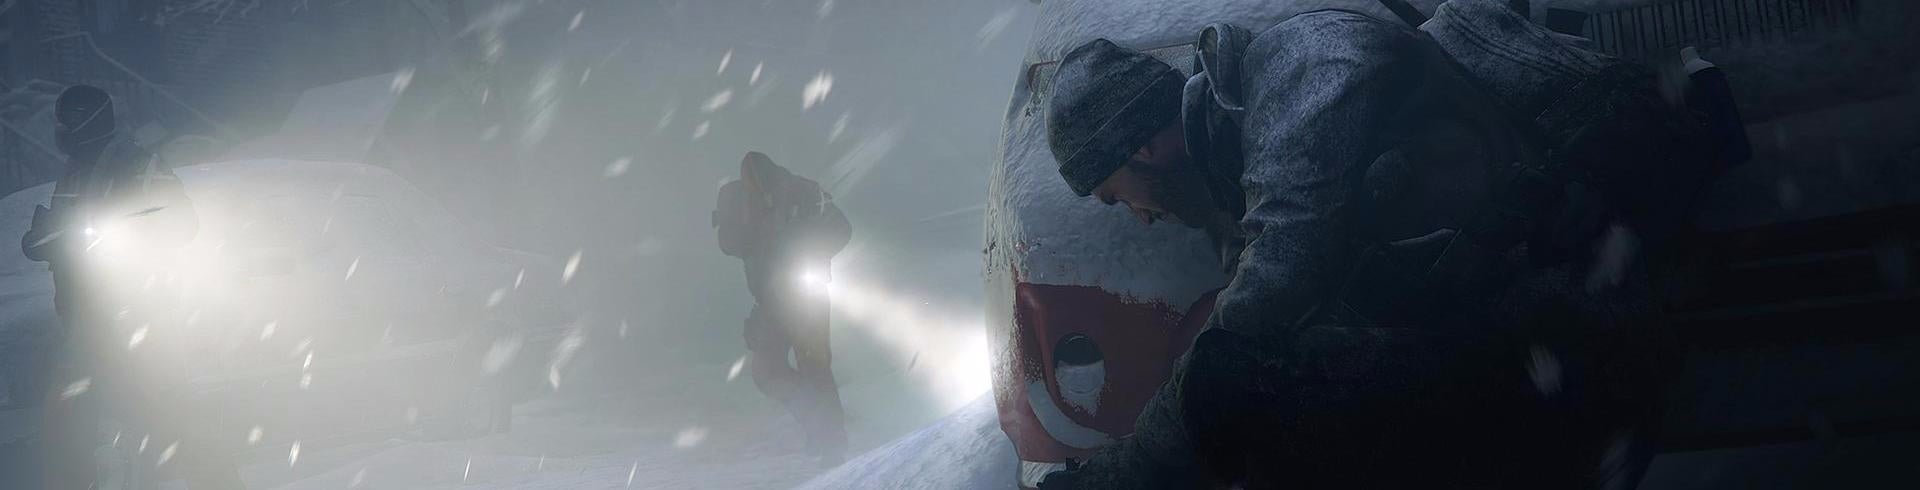 Afbeeldingen van The Division - Survival DLC Review -Frisse wind